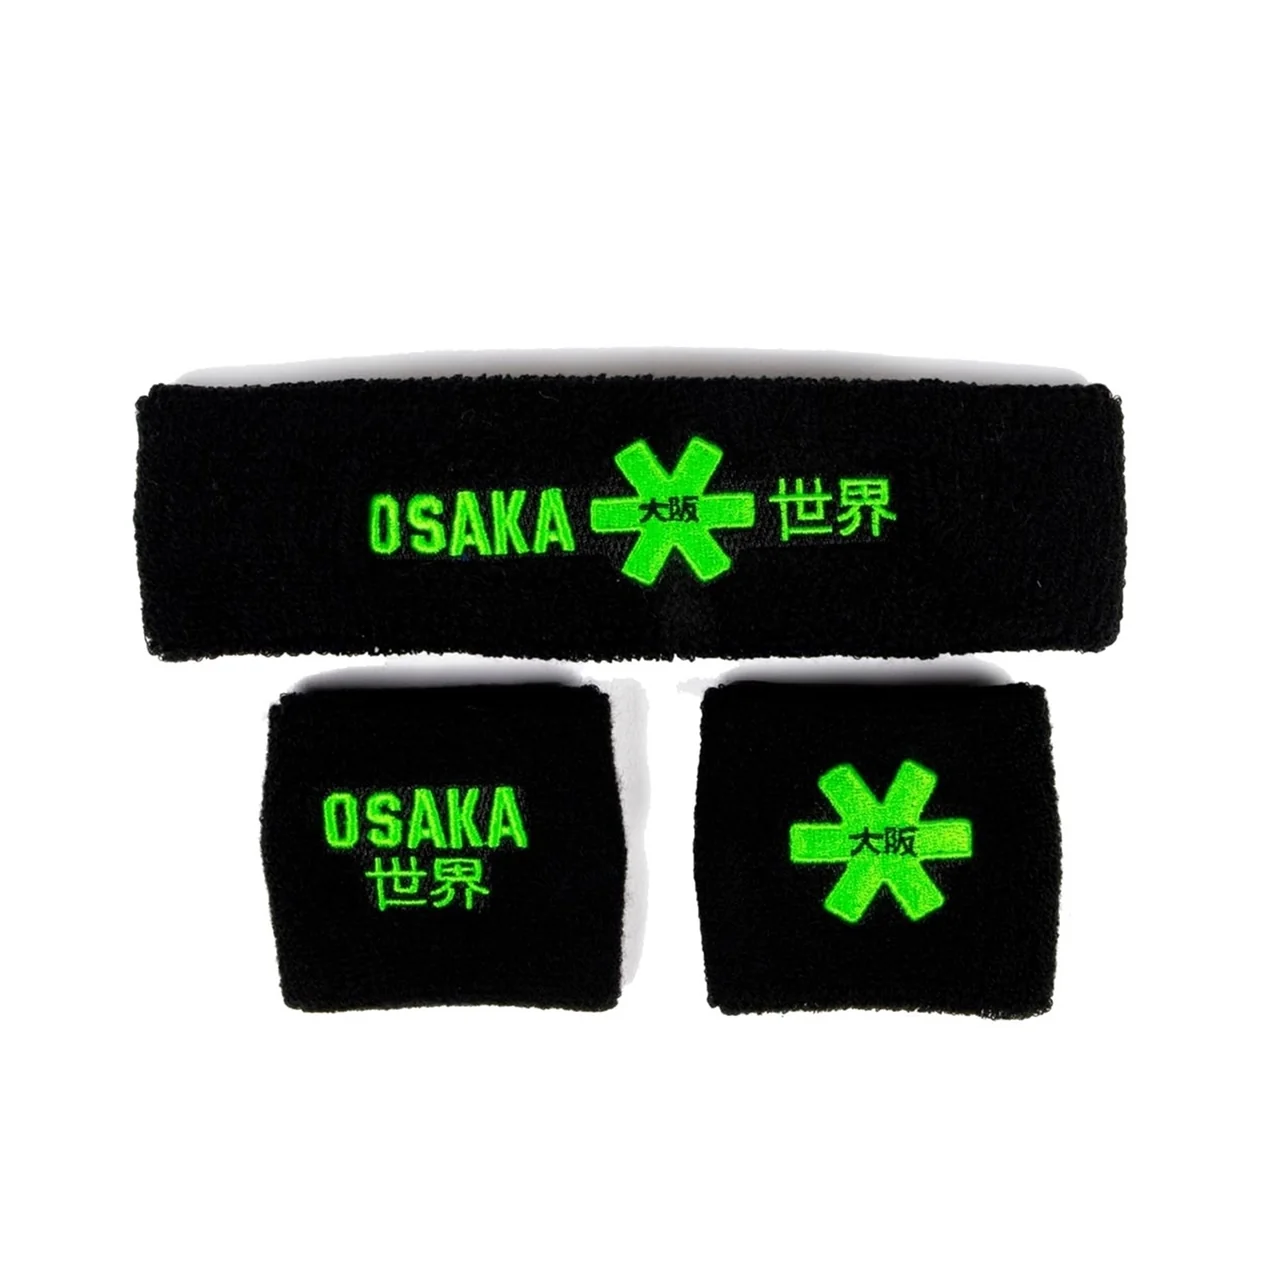 Osaka Sweatband 2 Set Black/Green